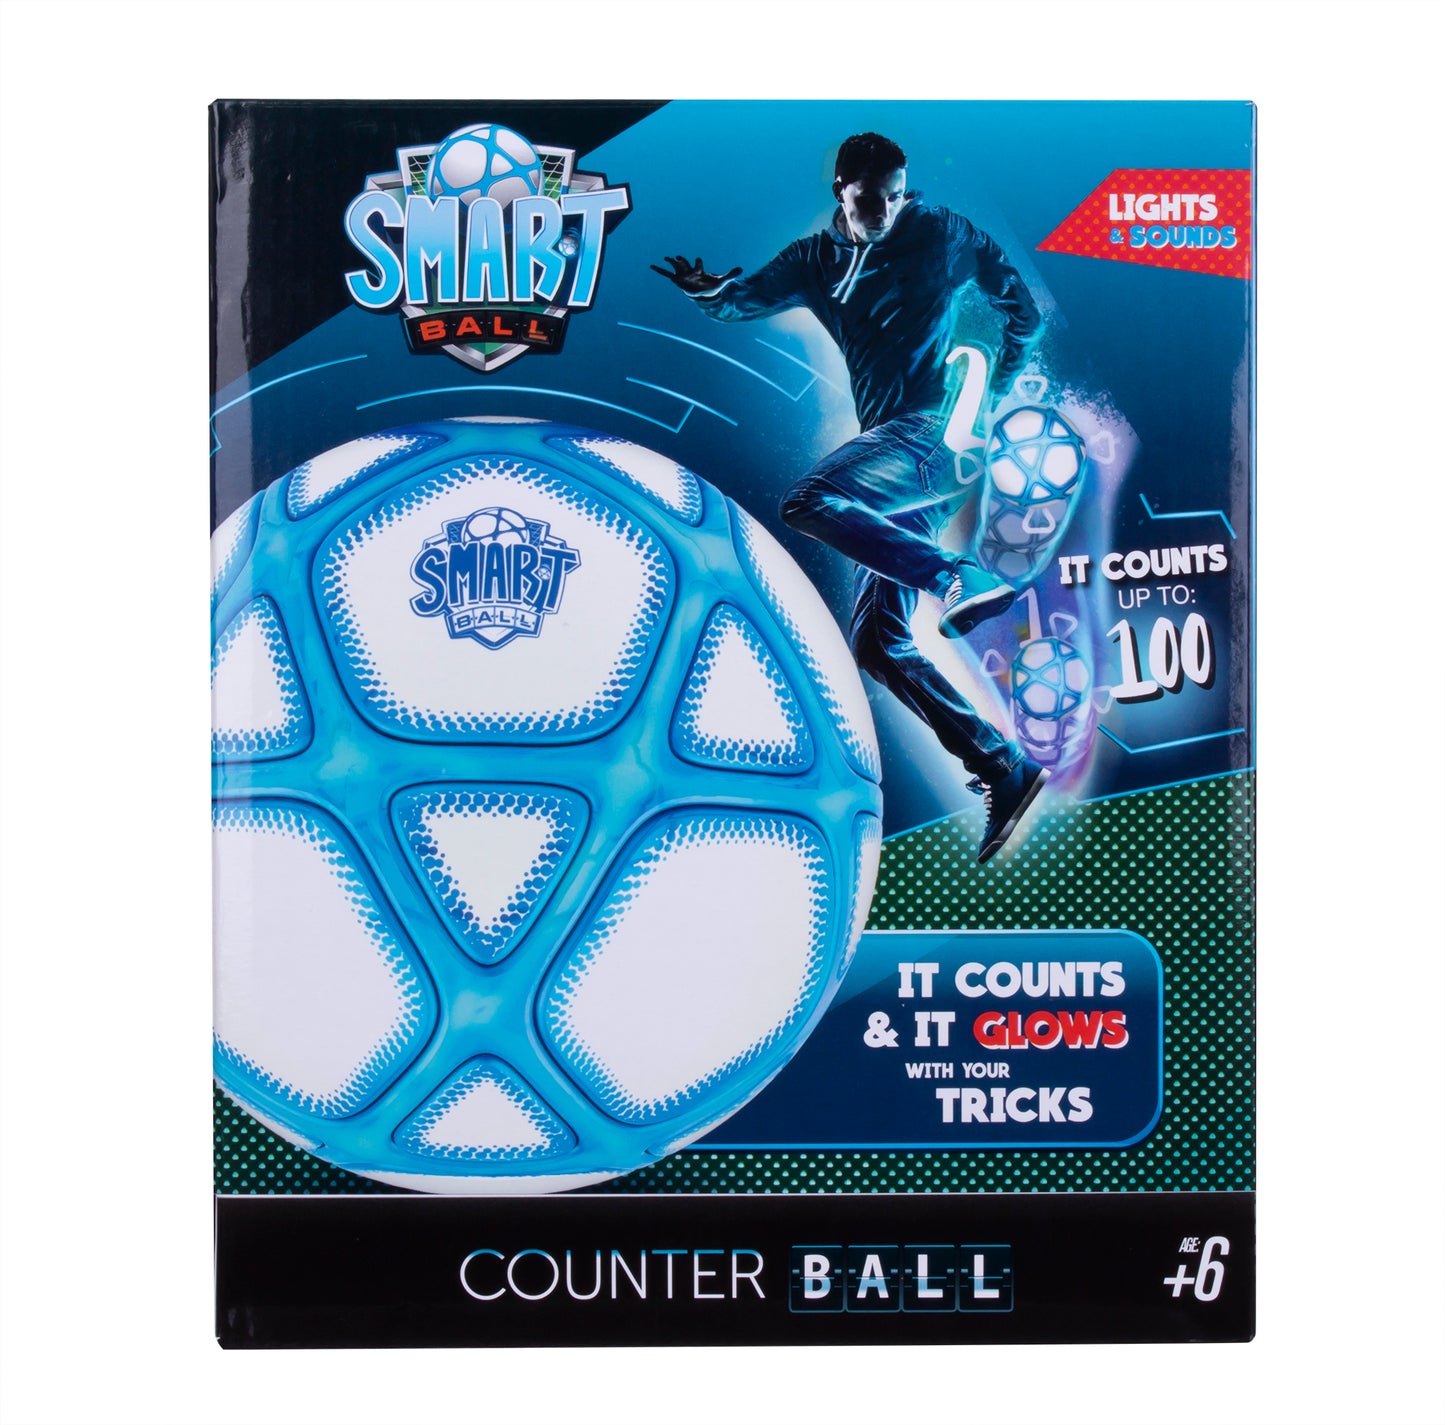 Smart Ball Super Fun Counter Football Soccer Ball